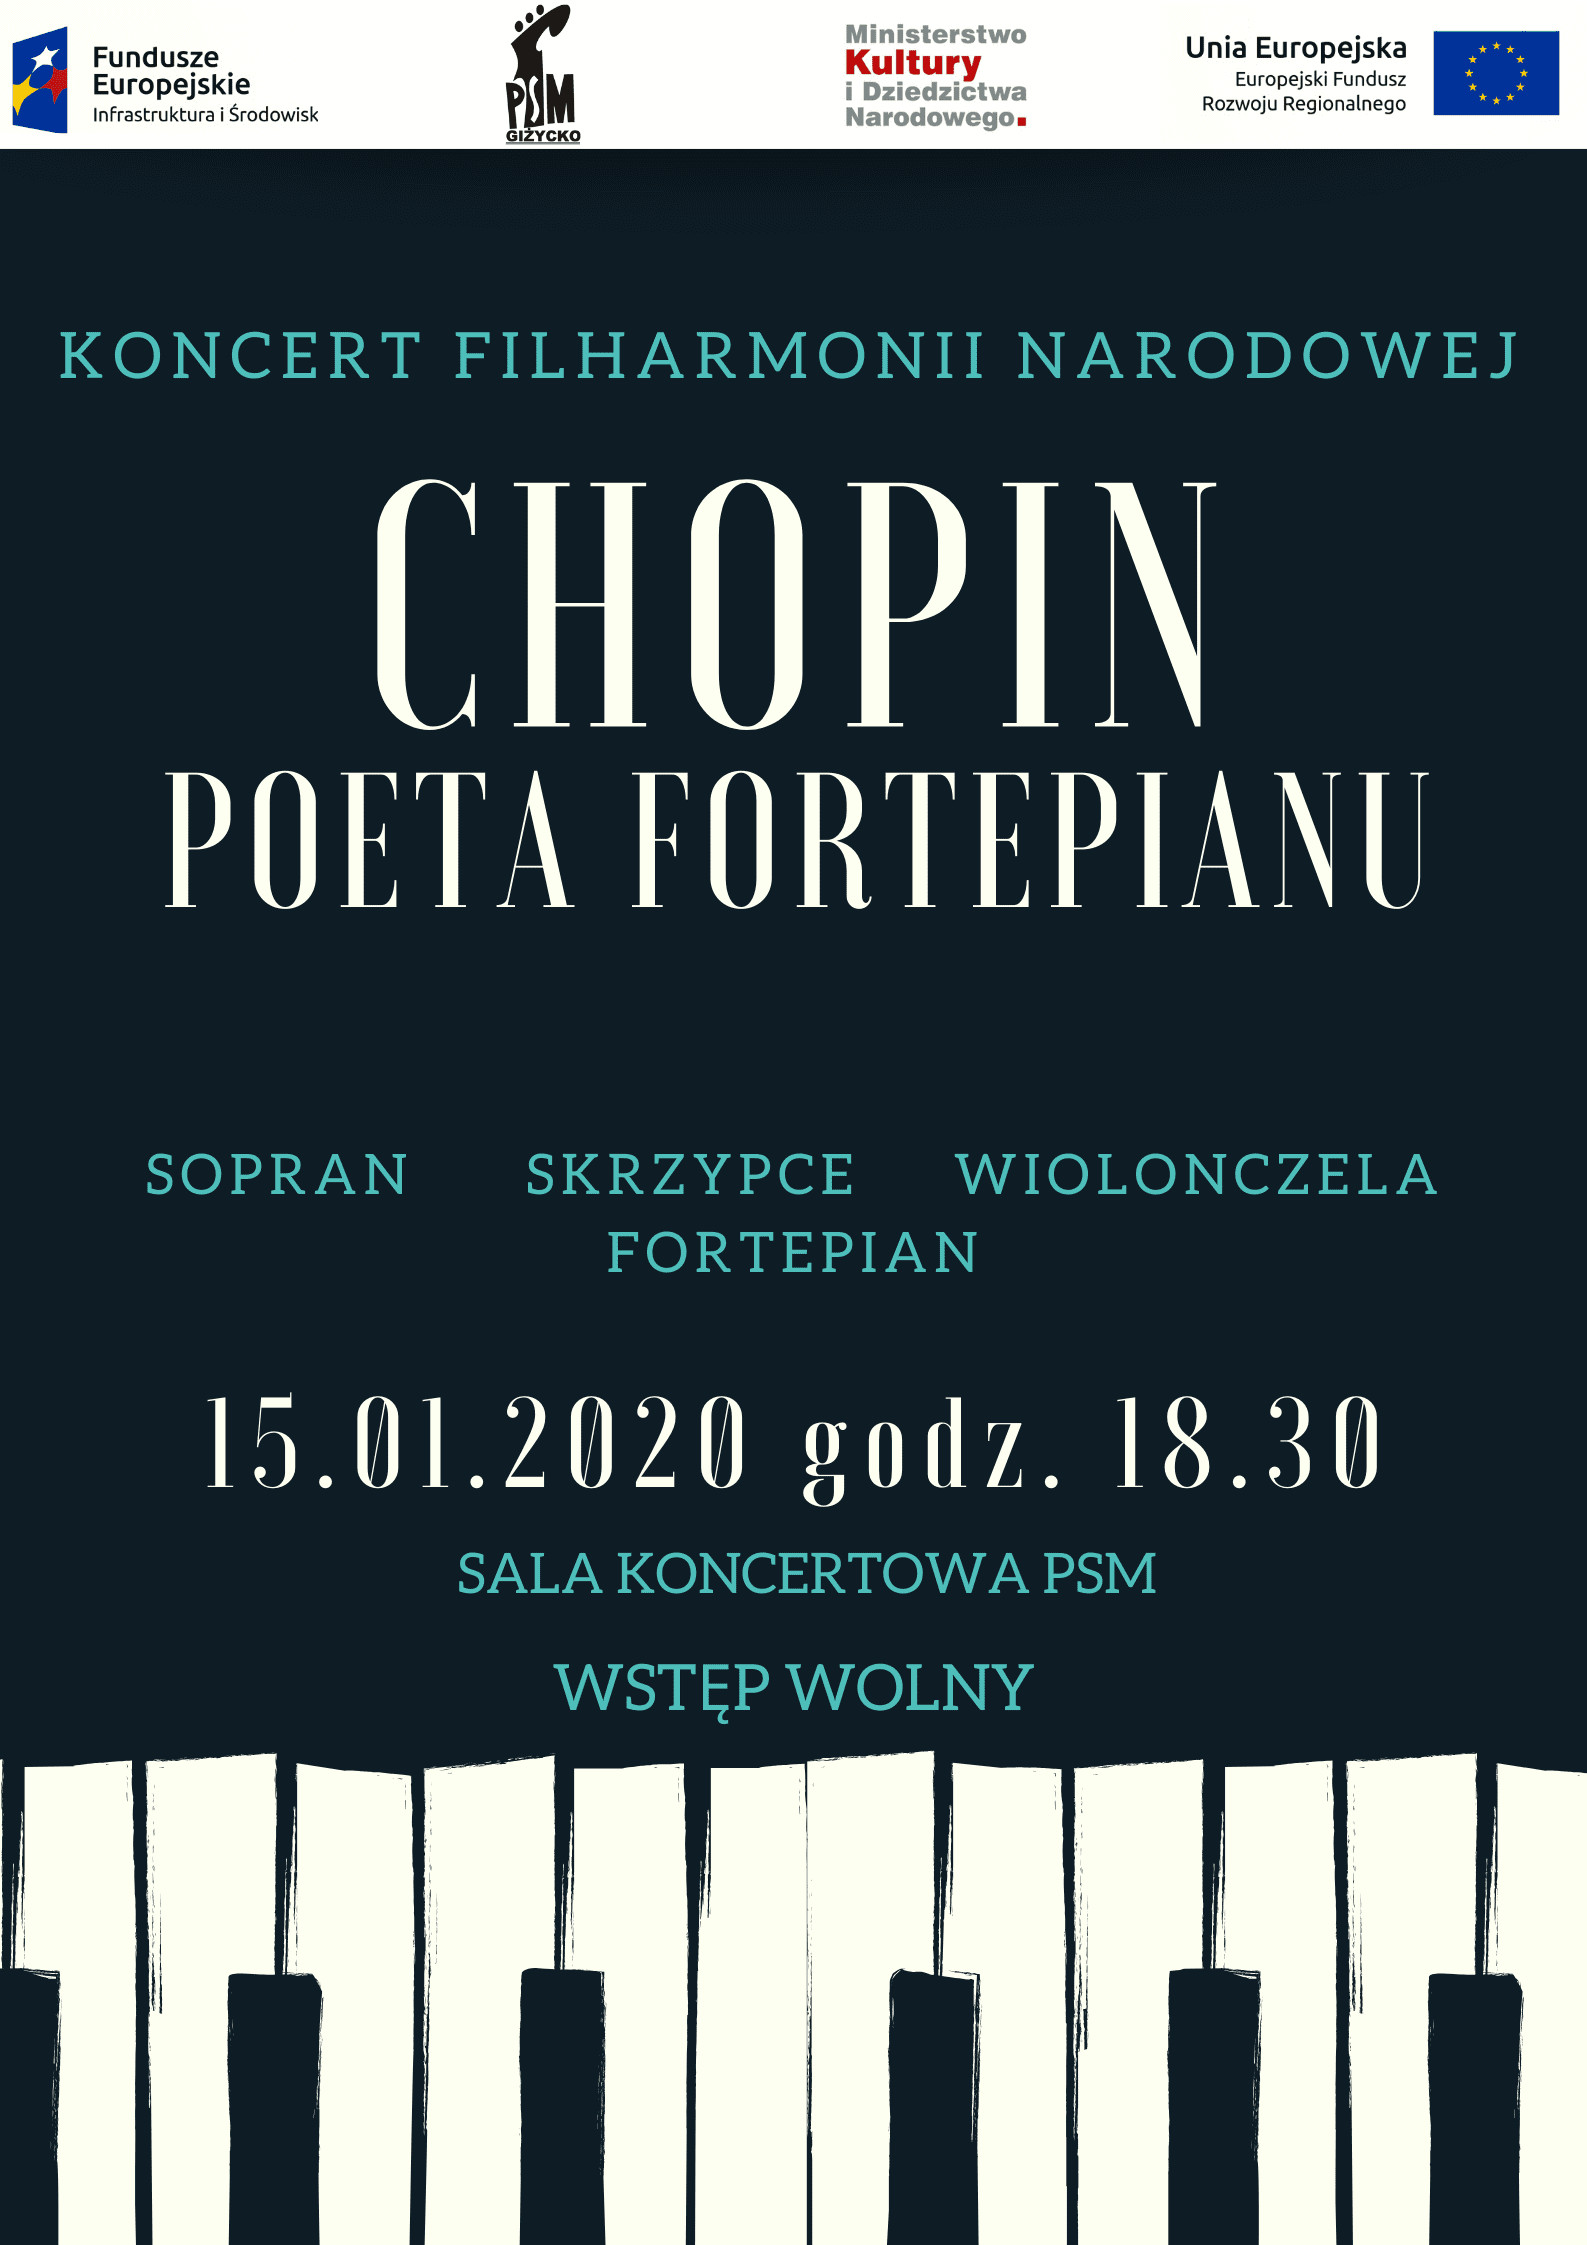 Koncert Filharmonii Narodowej  "CHOPIN - POETA FORTEPIANU"